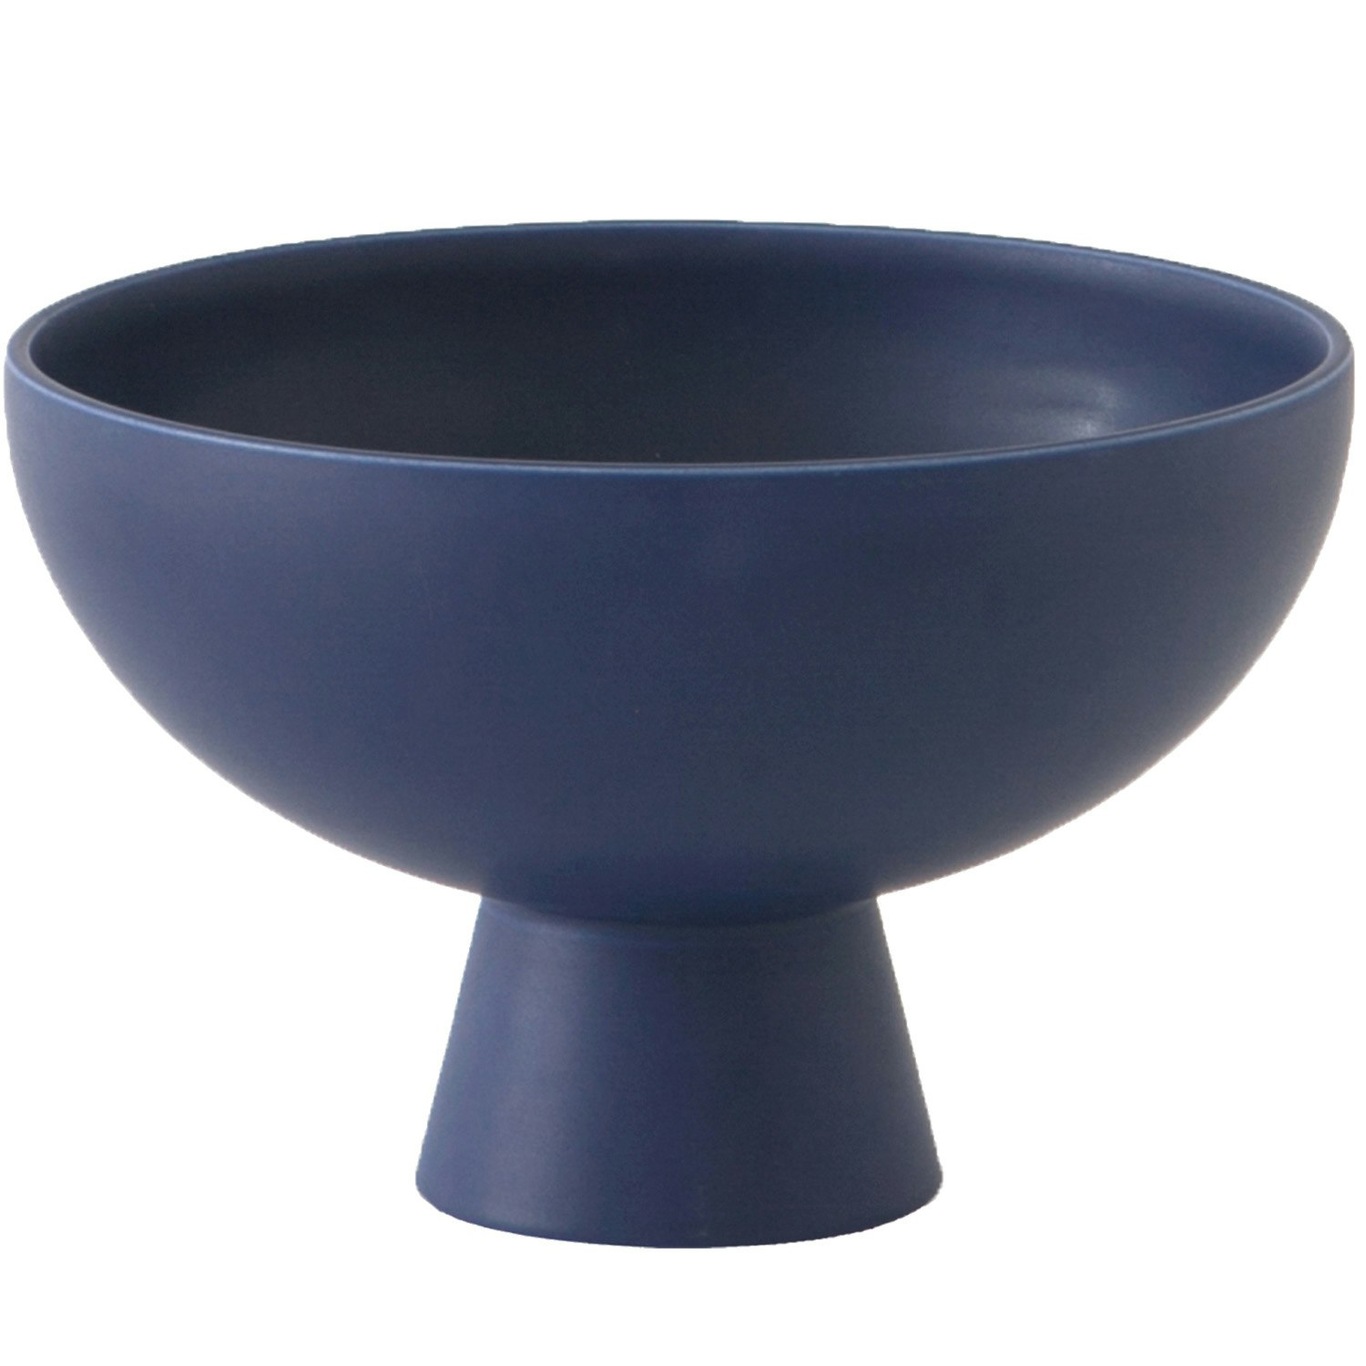 Strøm Bowl With Foot Ø19 cm, Blue